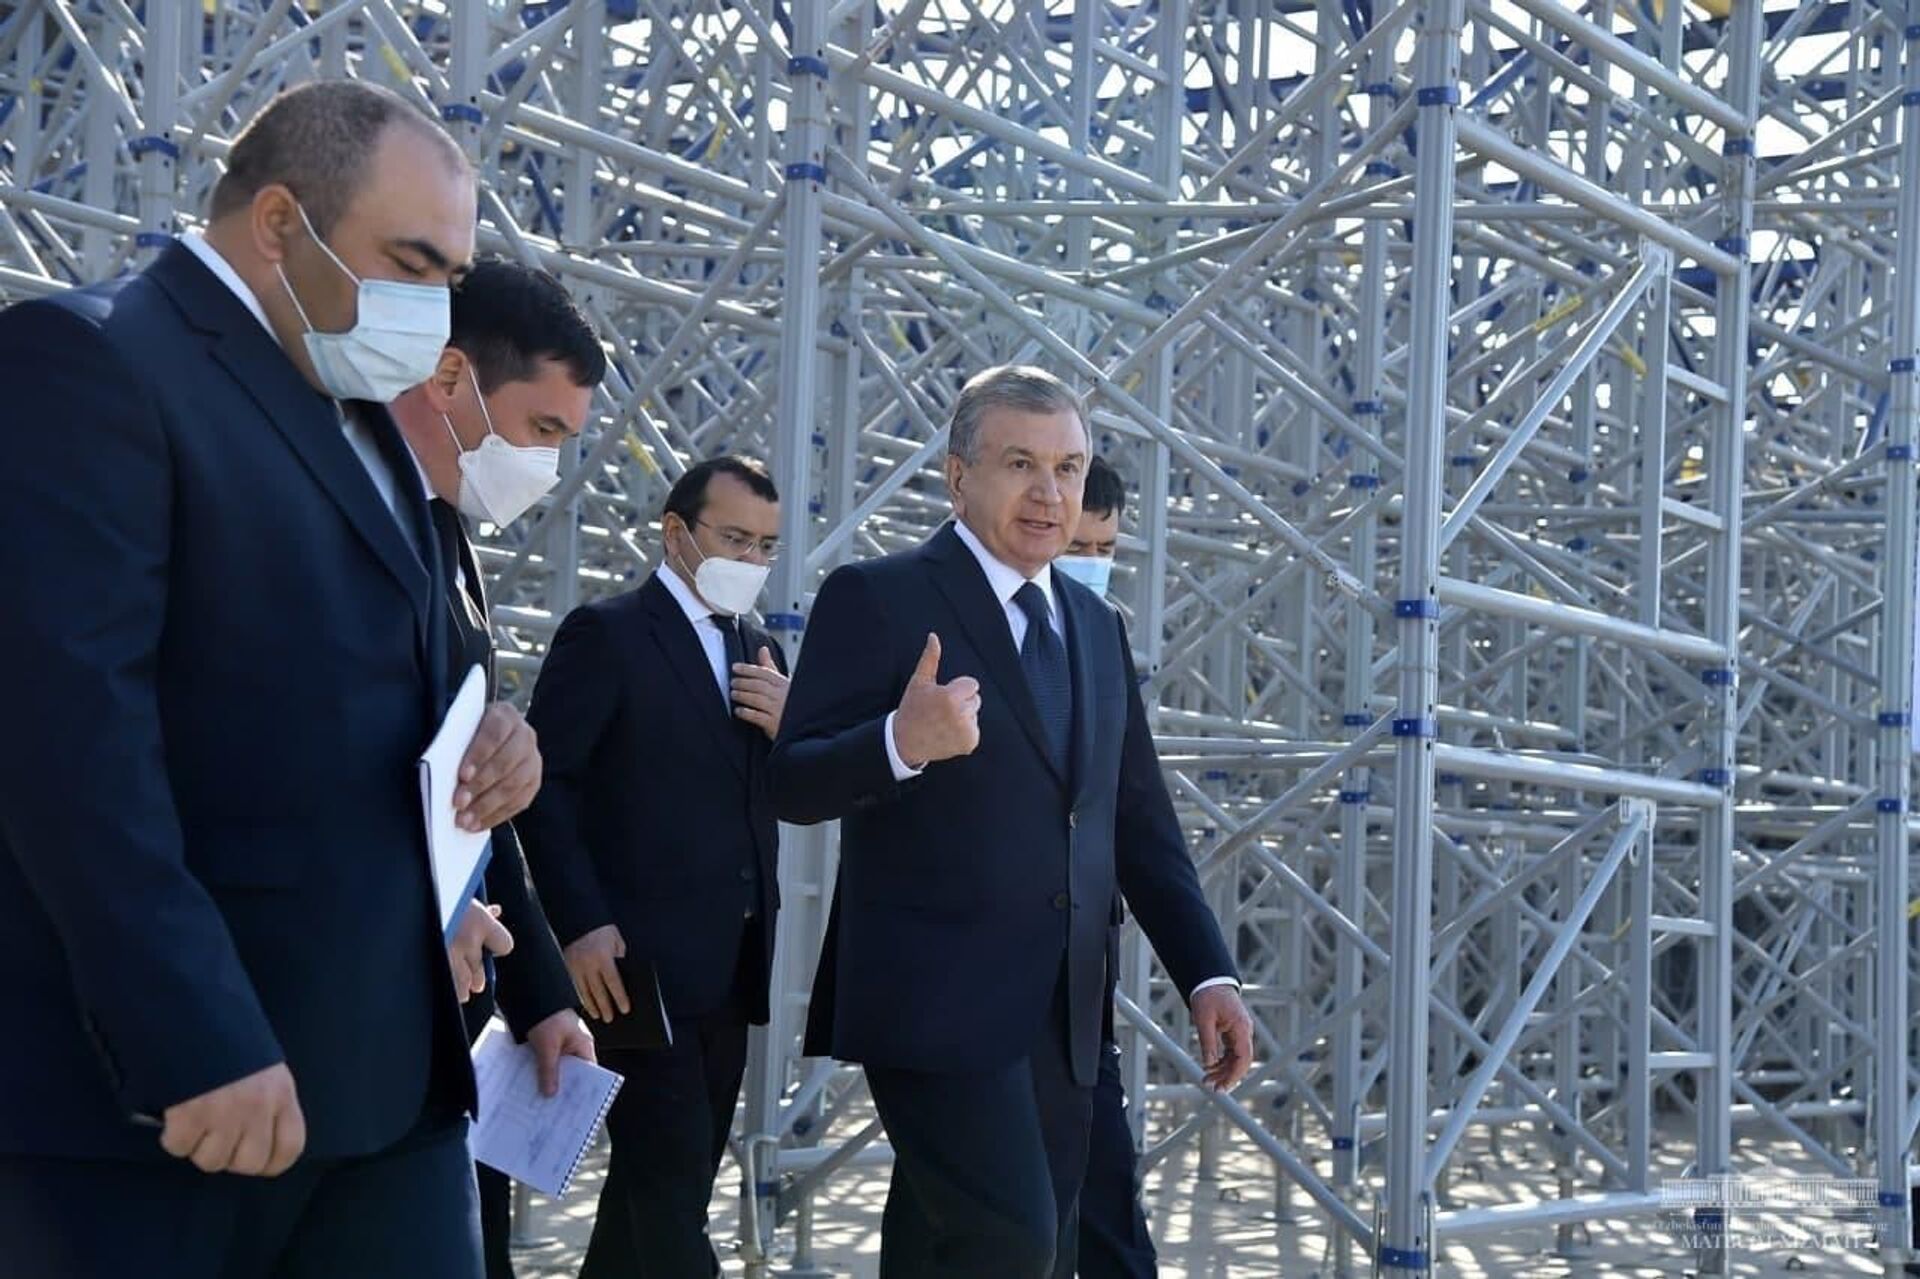 Президент Узбекистана Шавкат Мирзиёев проверил, как идет строительство нового туристического центра в Самаркандской области - Sputnik Узбекистан, 1920, 15.04.2021